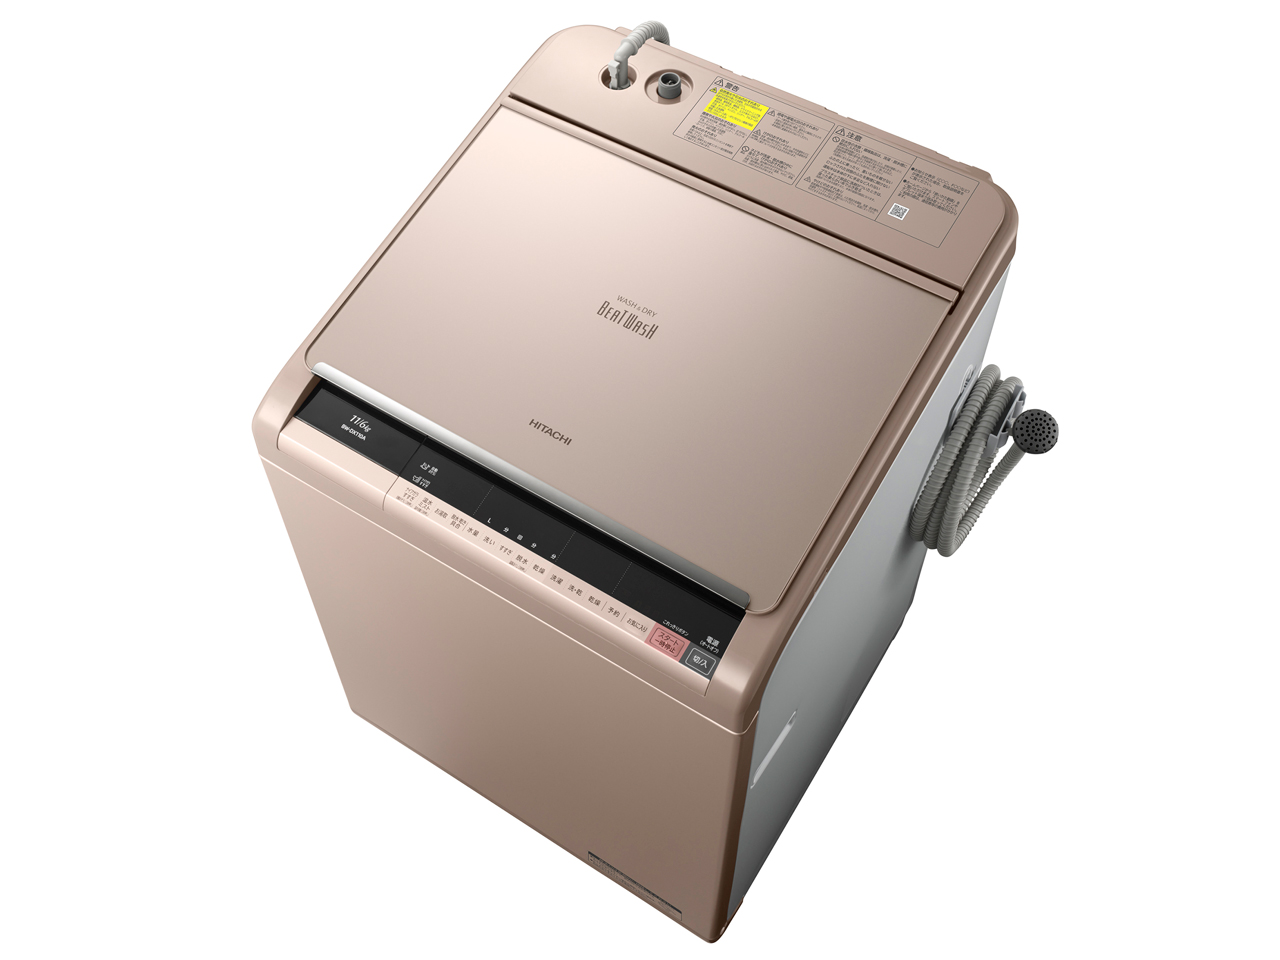 日立 BW-DX110A-N 全自動洗濯乾燥機(洗濯11.0kg/乾燥6.0kg)「ビートウォッシュ」 シャンパン